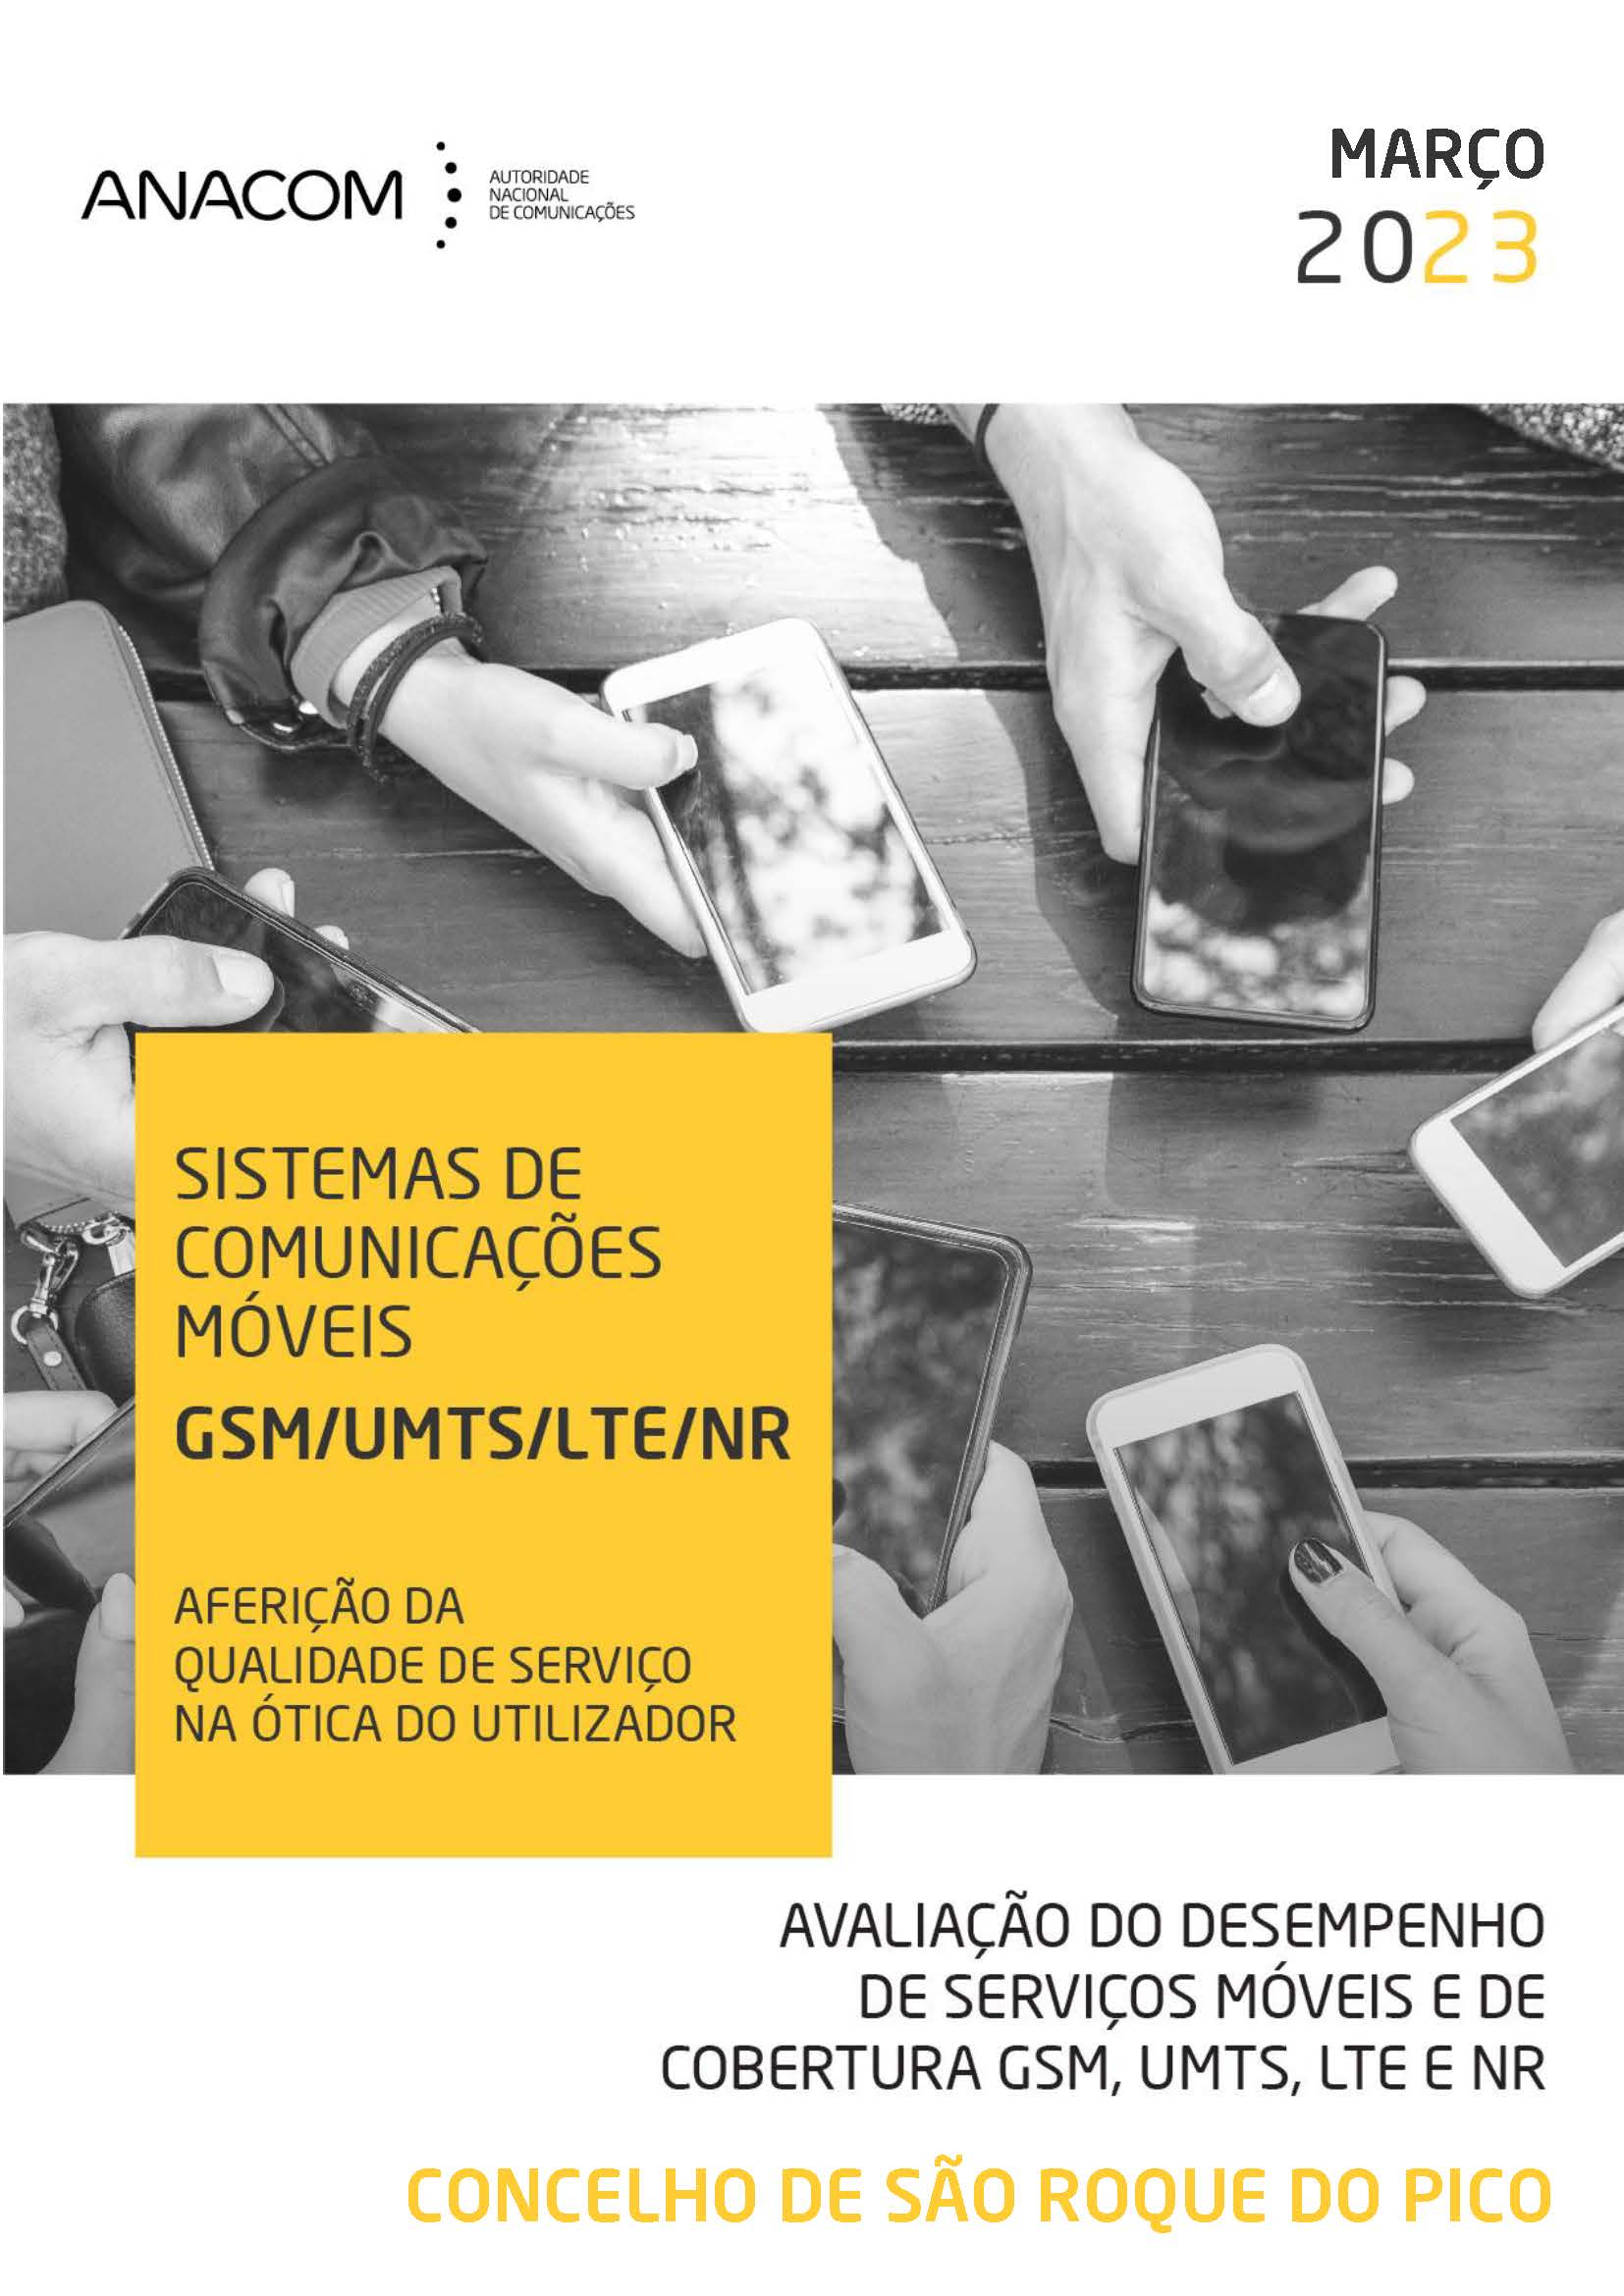 Avaliação do desempenho de serviços móveis e de cobertura GSM, UMTS, LTE e NR no Concelho de São Roque do Pico (Açores)